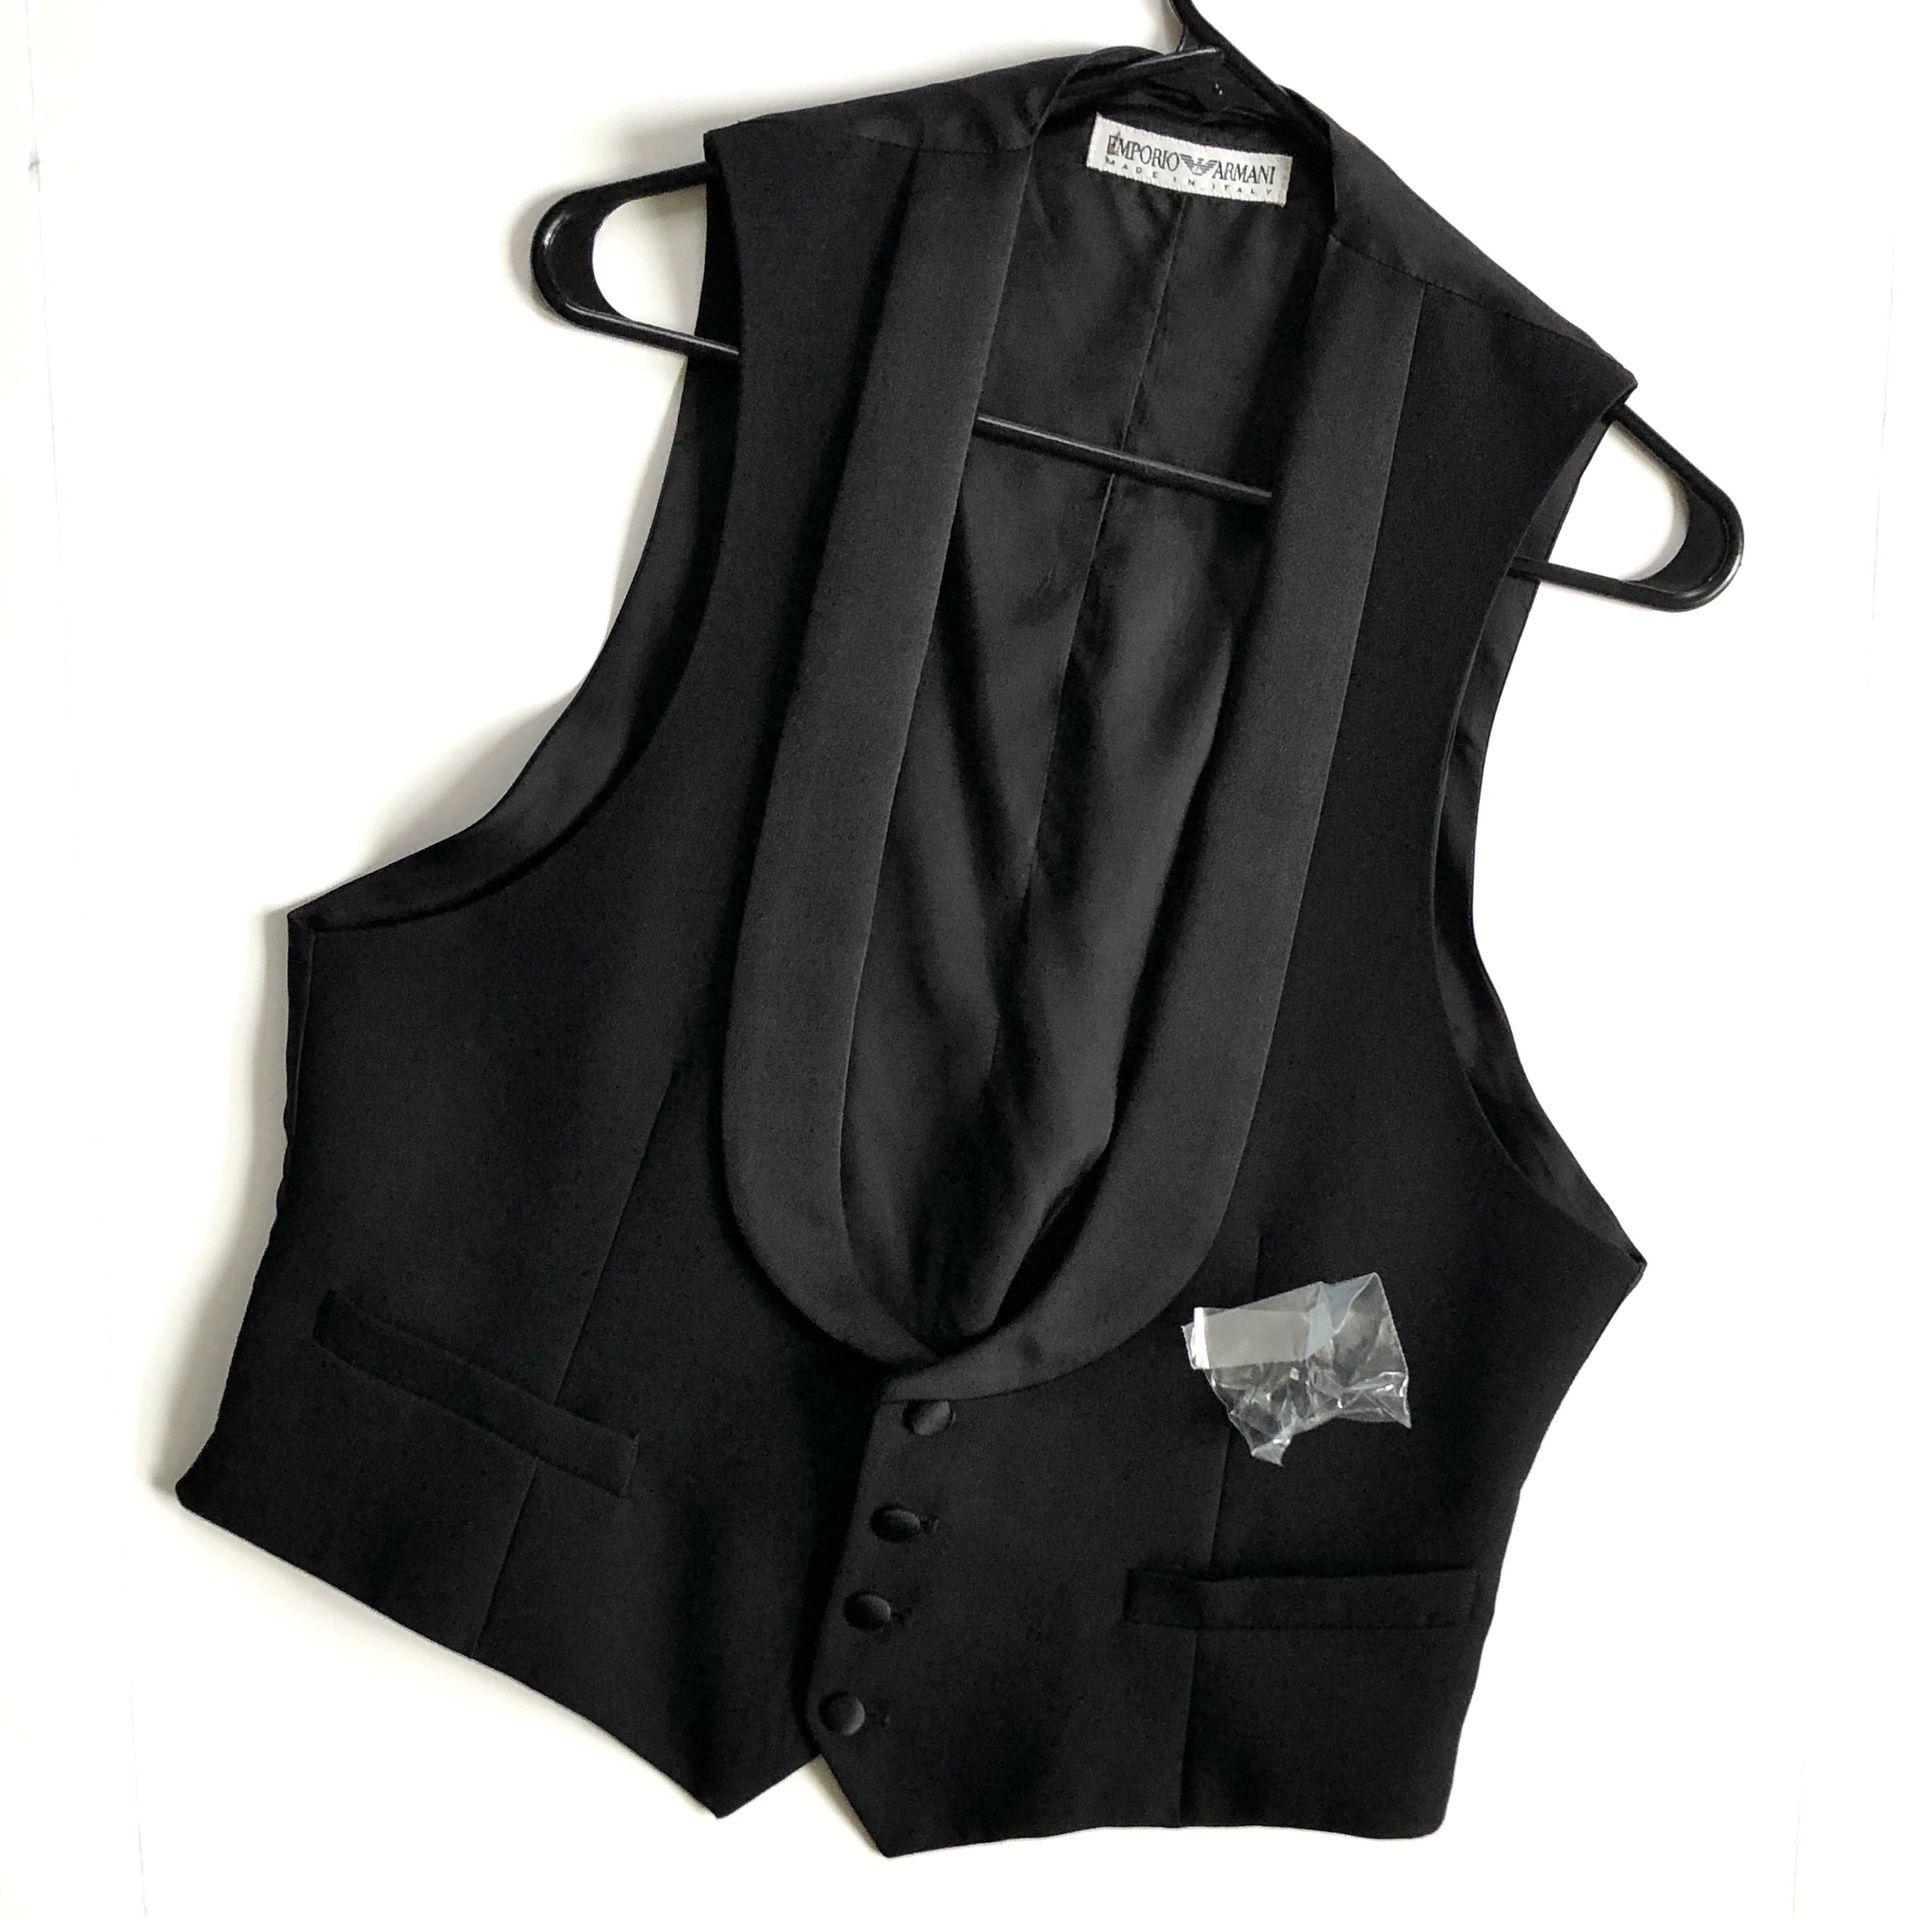 Men’s Emporio Armani Formal Wool Pique Tuxedo Vest in Black (EUR 50 / US 40 Medium)